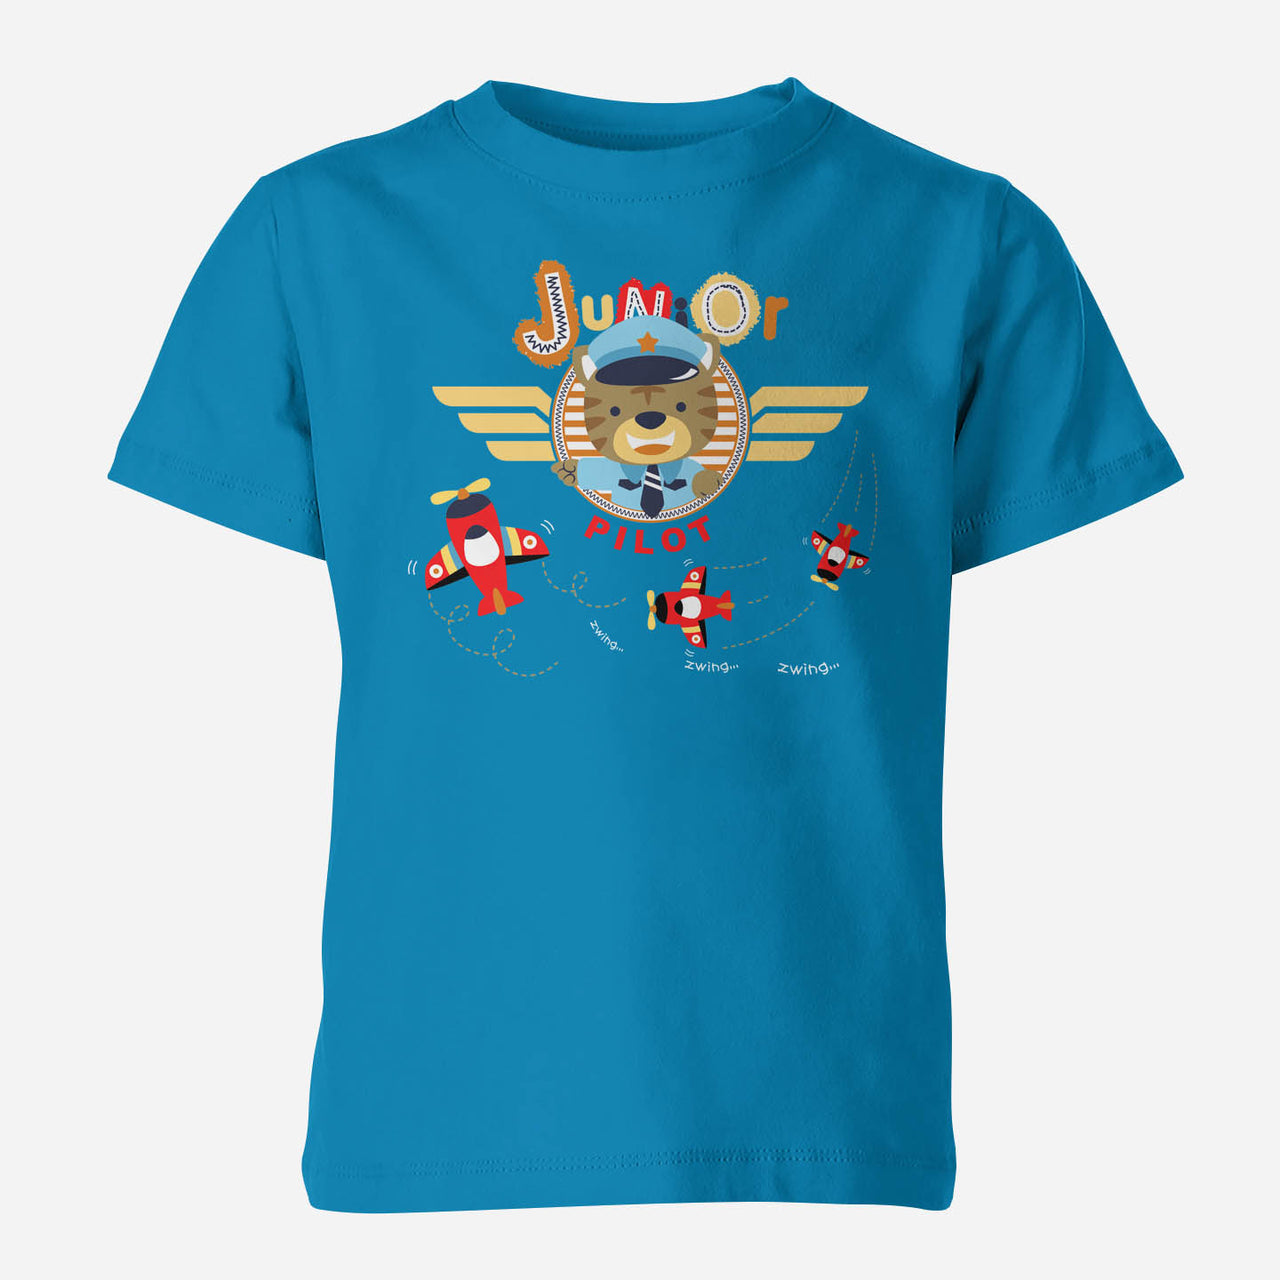 Junior Pilot Designed Children T-Shirts